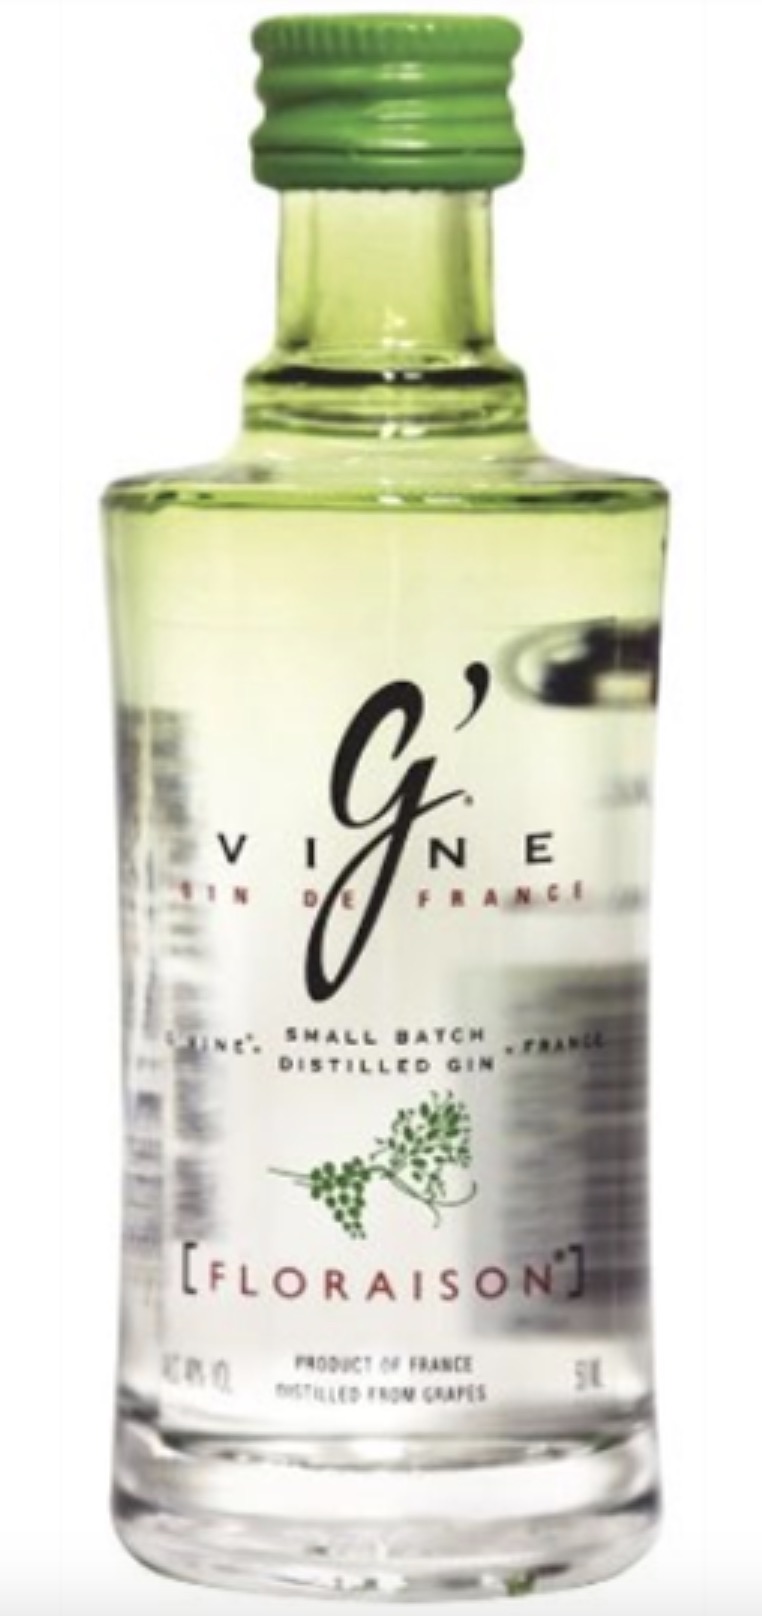 Gin G Vine Floraison